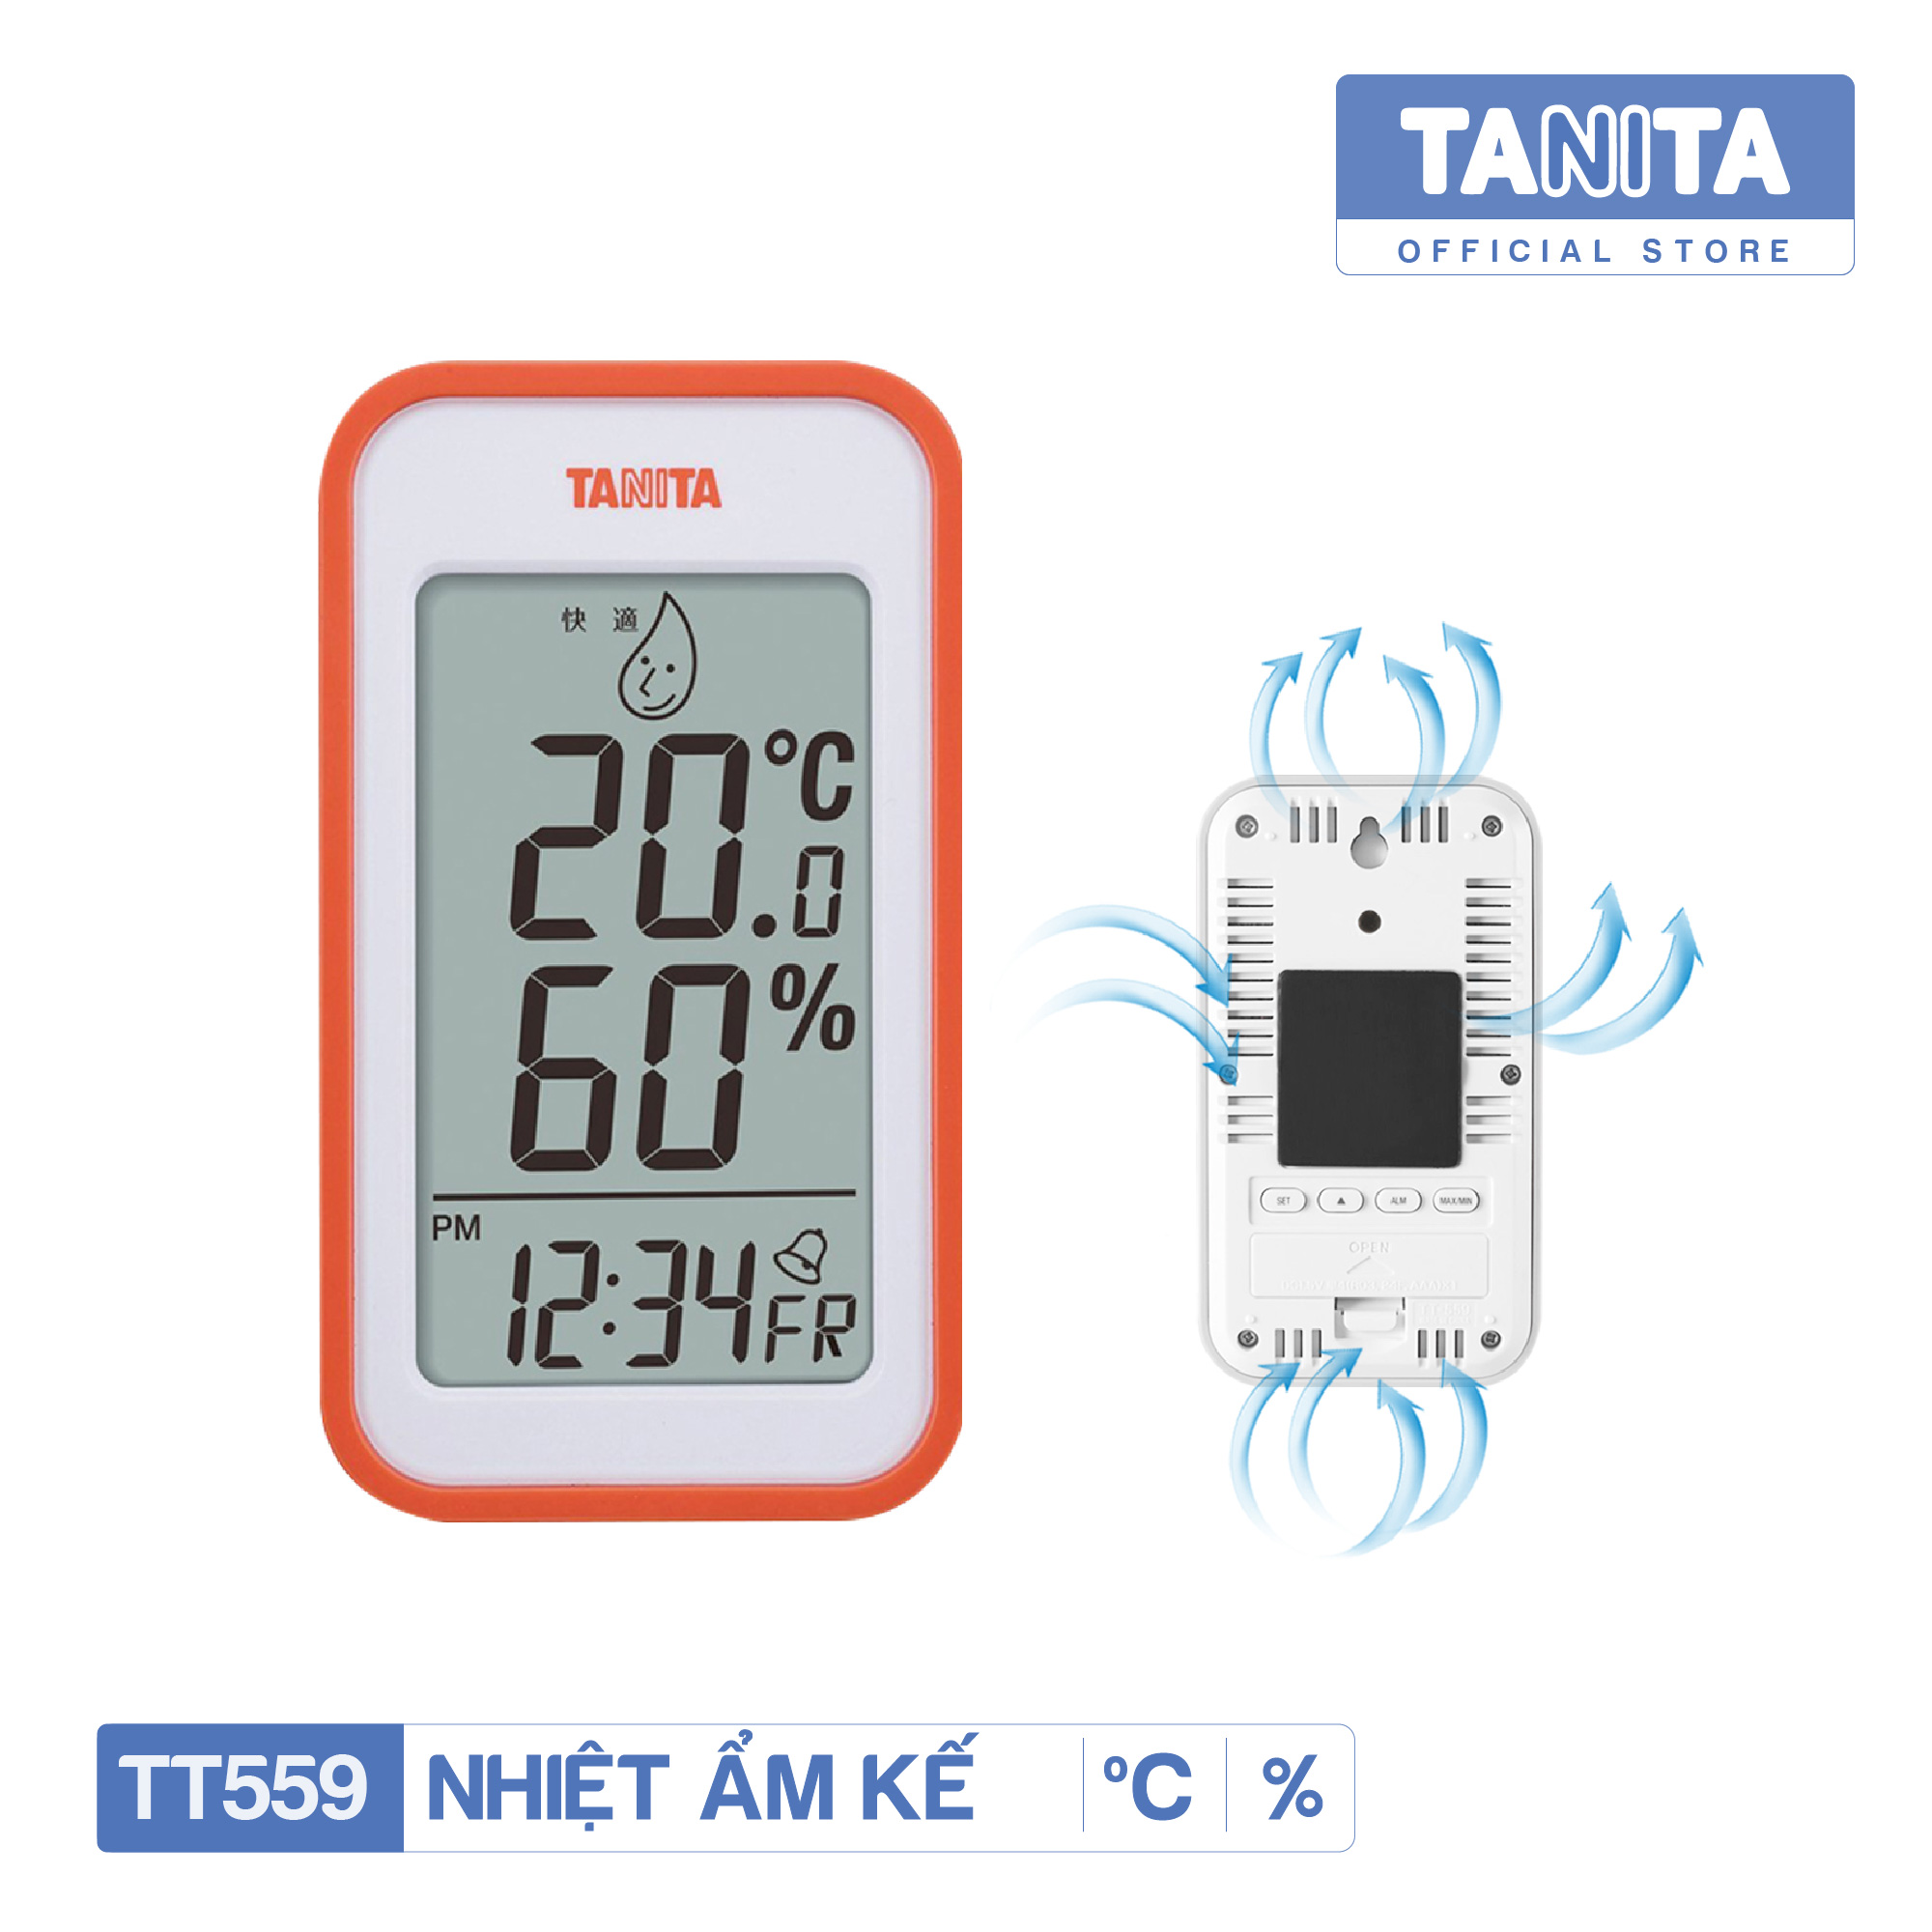 Nhiệt ẩm kế cơ học TANITA TT559 (Màu ngẫu nhiên), Chính hãng nhật,Nhiệt ẩm kế cơ,Nhiệt ẩm kế điện tử,Nhiệt ẩm kế nhật,Nhiệt ẩm kế chính xác,Nhiệt ẩm kế phòng,Nhiệt ẩm kế cho trẻ sơ sinh,Nhiệt ẩm kế treo tường